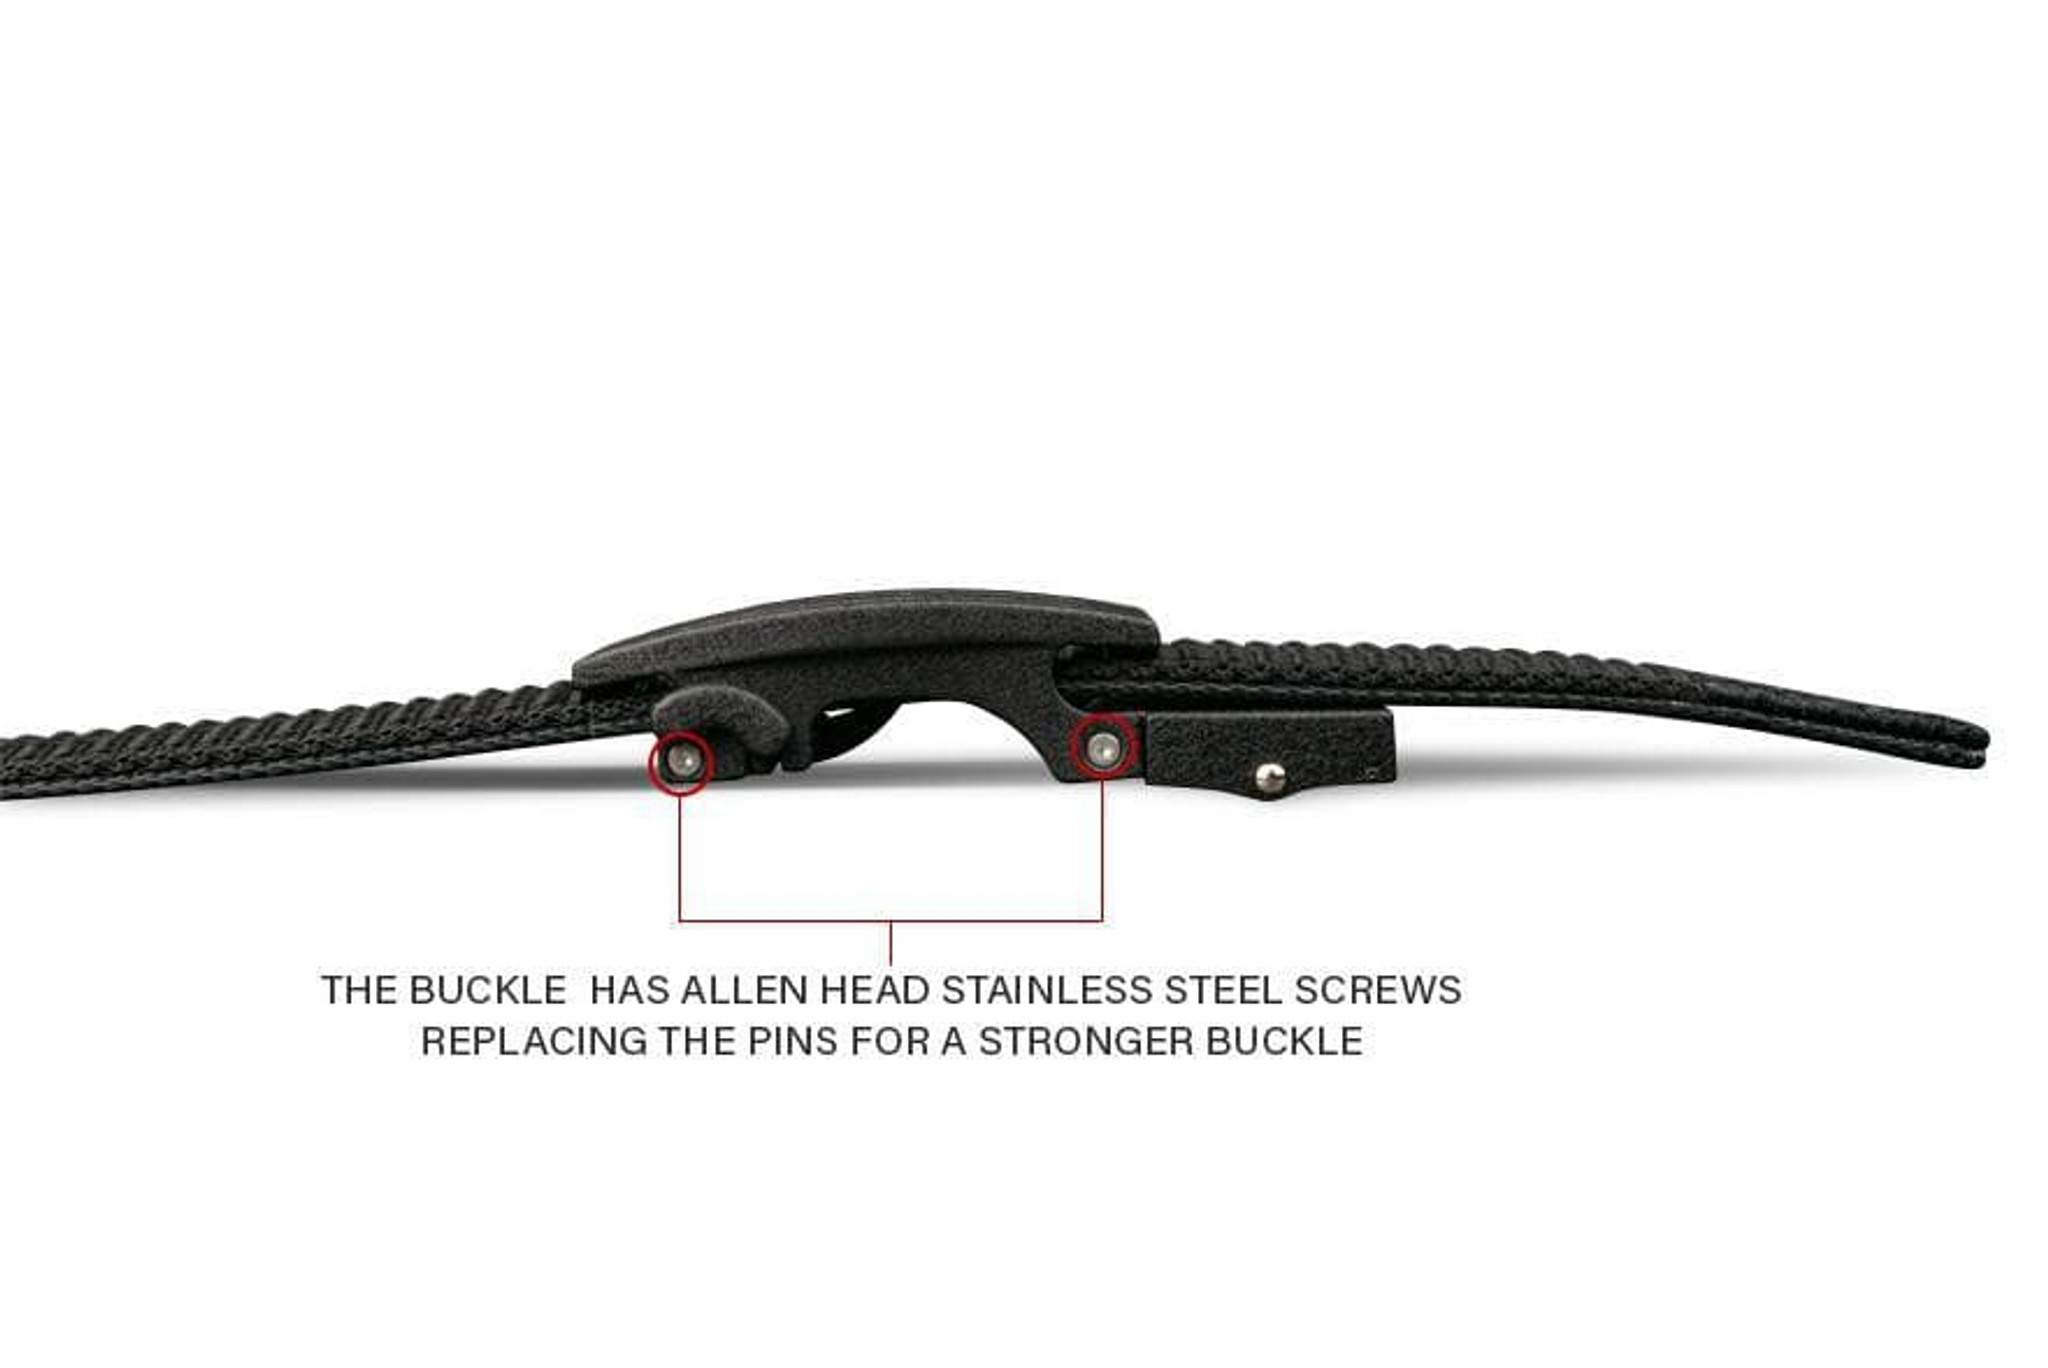 BELT REVIEW] Ratchet Gun Belt For Concealed Carry – Concealed Nation